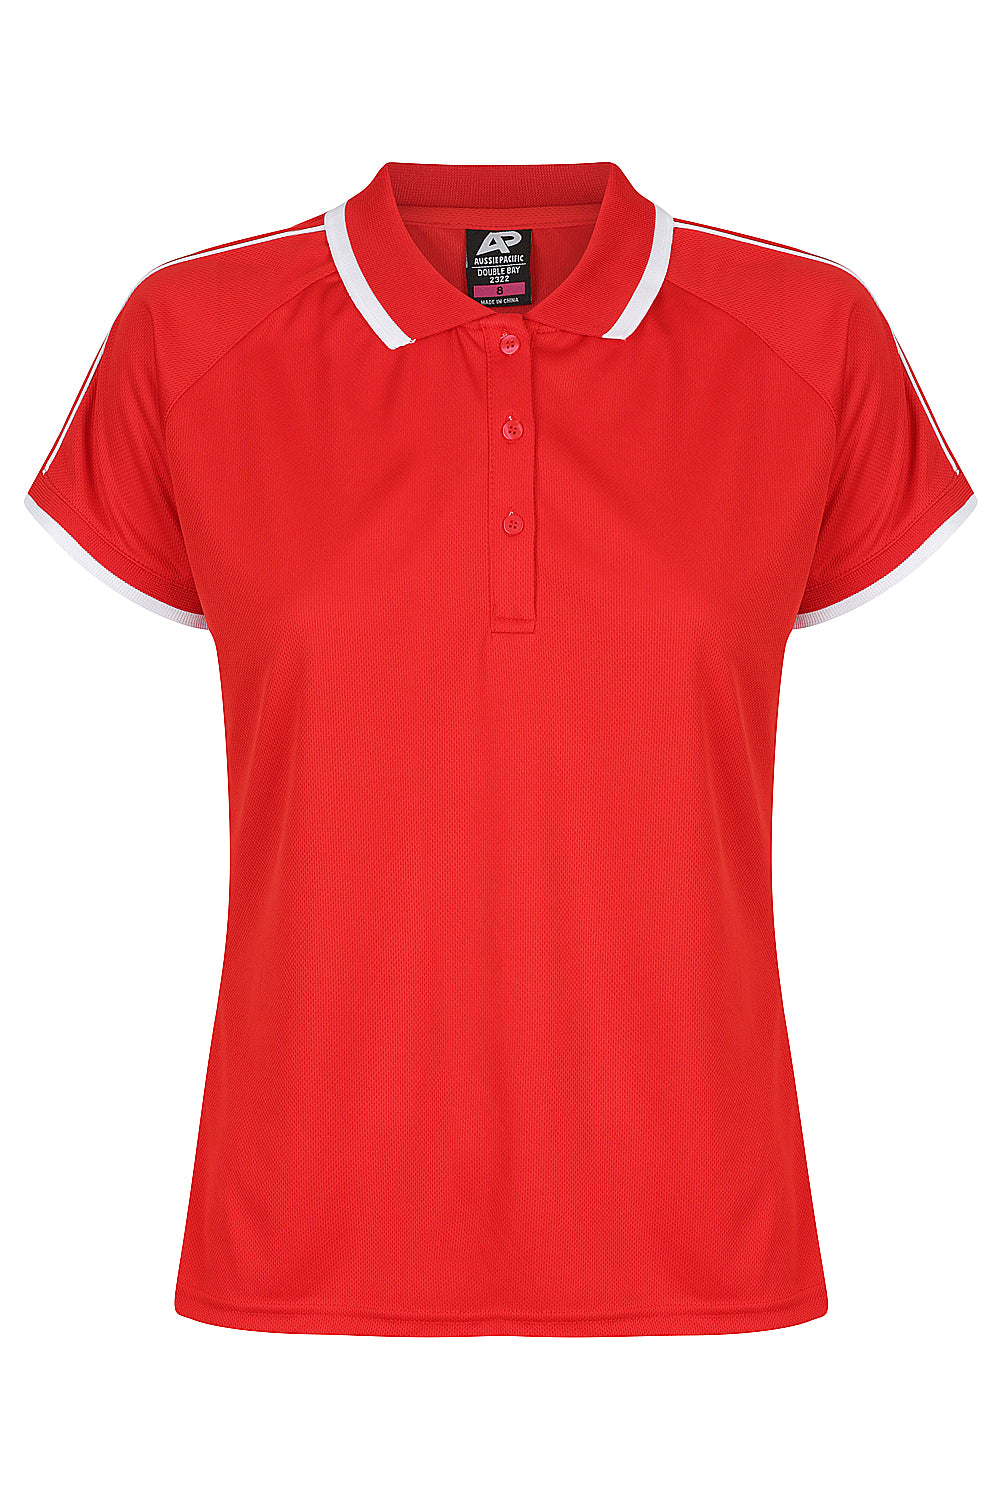 Custom Ladies Double Bay Work Shirt - Red/White